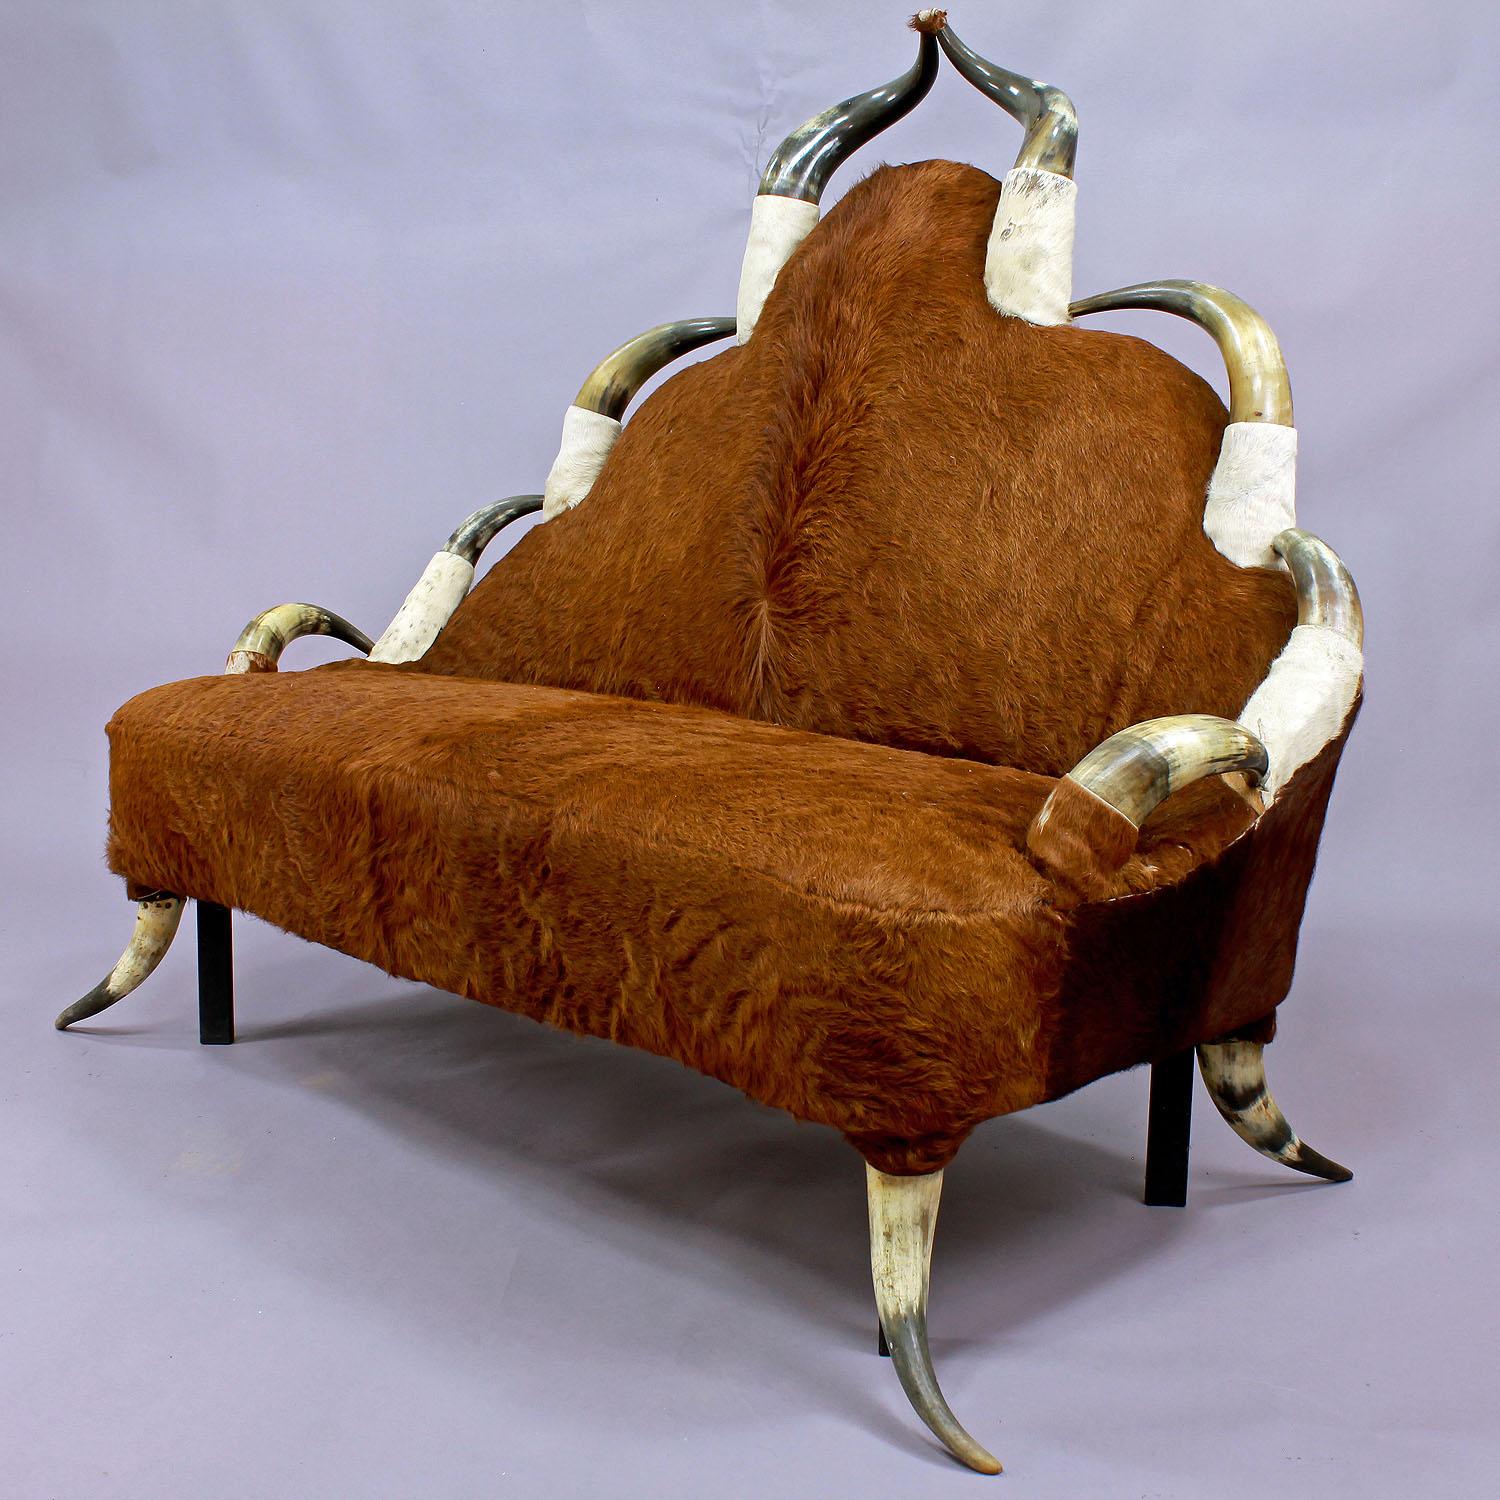 Ein großes Stierhorn-Möbelsofa, um 1870, verziert mit einer Reihe von antiken langen Hörnern und bezogen mit Vintage-Kuhfell (muss erneuert werden, verliert die Haare). Die Eisenbeine verbessern die Stabilität. Hergestellt in Österreich, um